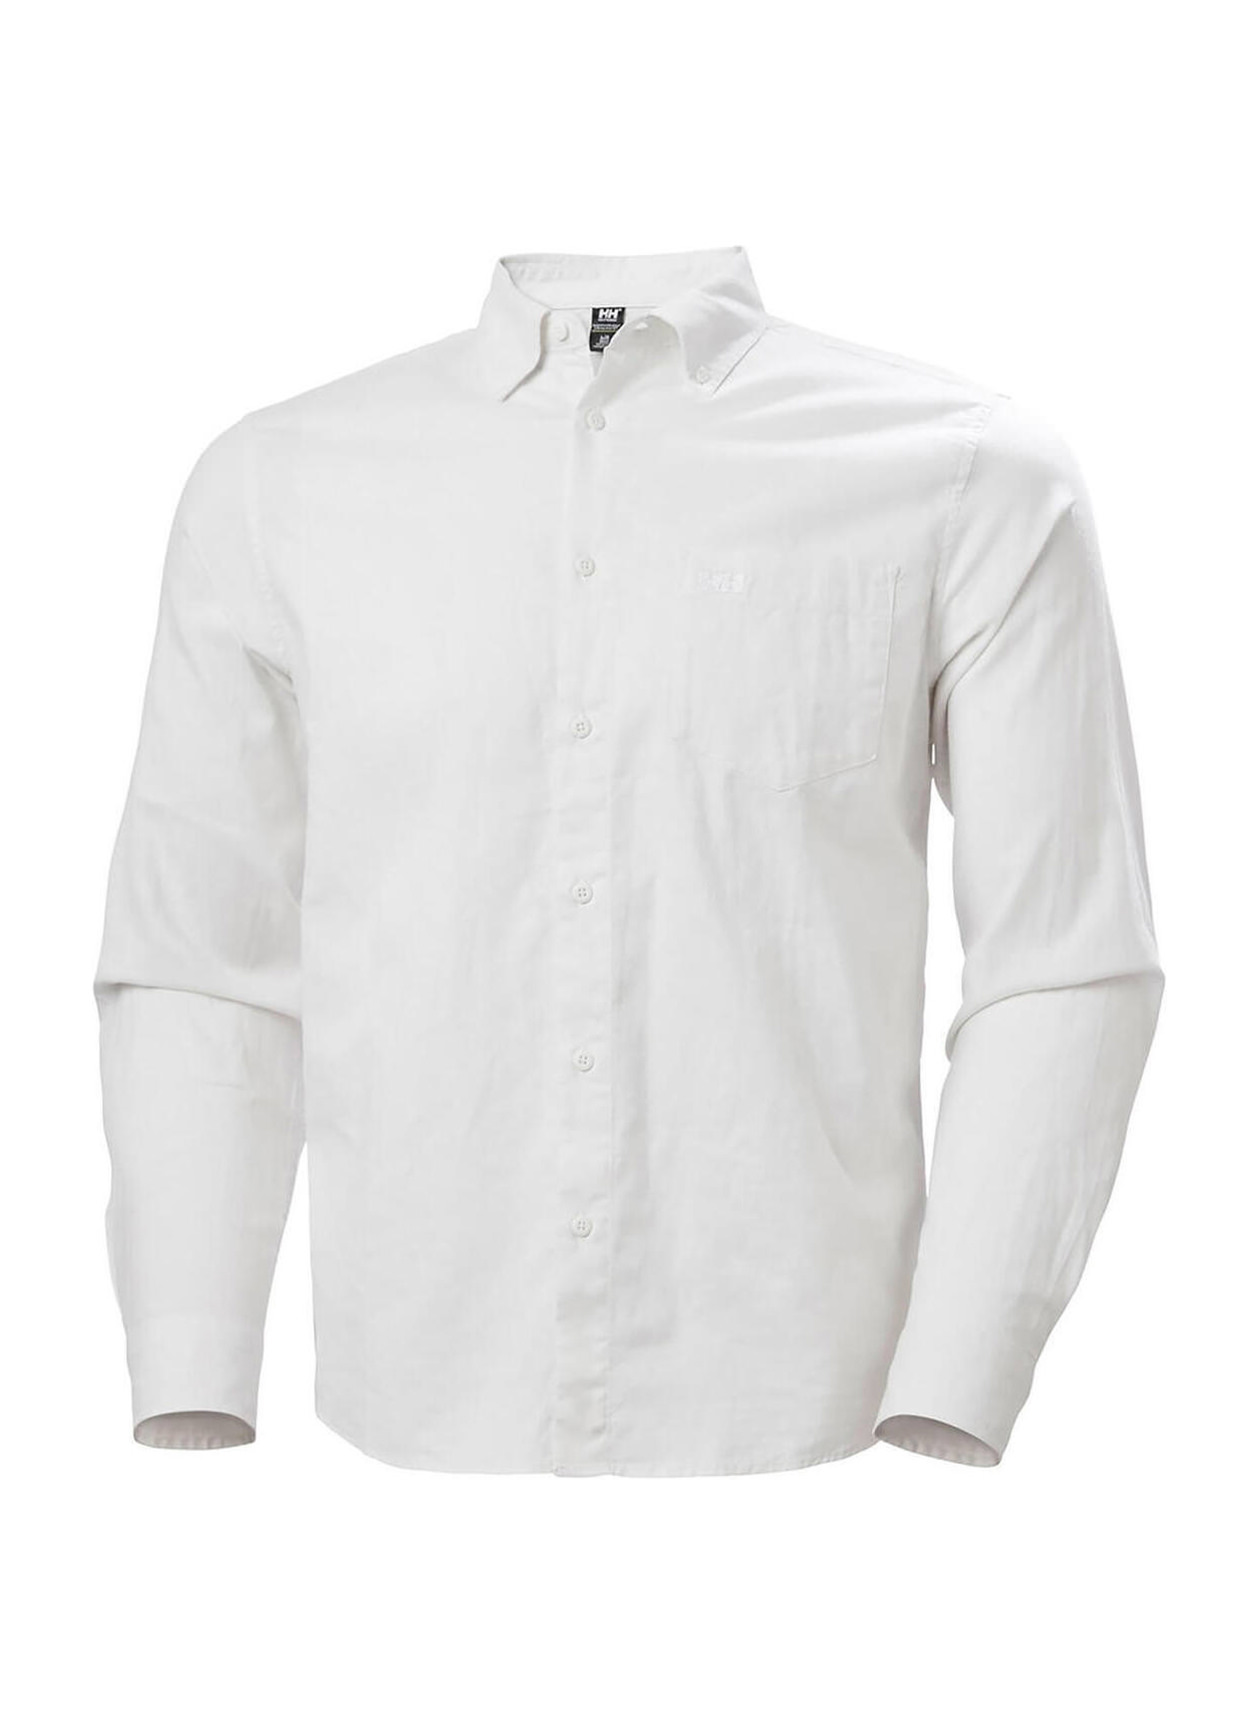 Embroidered Work Shirts Helly Hansen Men's White Club Shirt